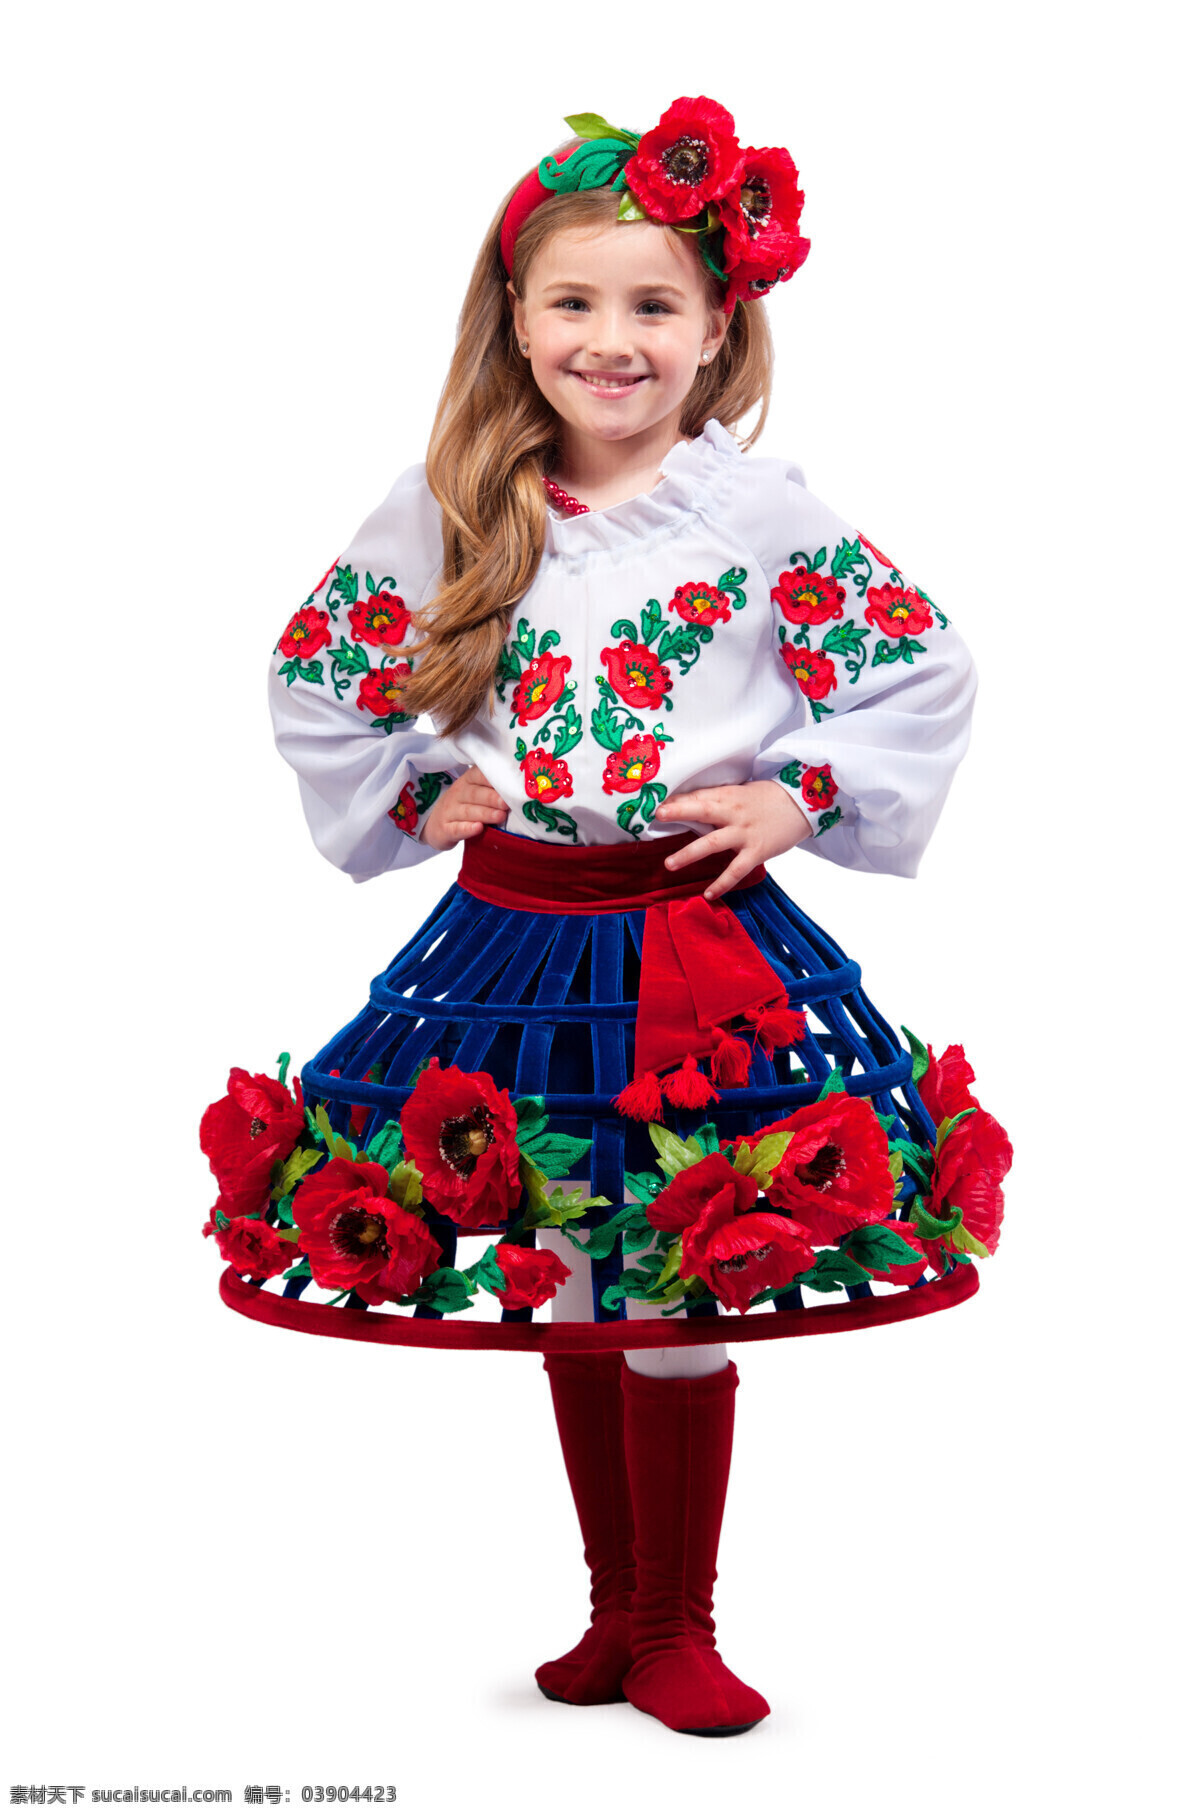 乌克兰 小女孩 国际 乌克兰小女孩 可爱 美丽 鲜花头饰 鲜花蓬蓬裙 长发 传统服饰 儿童图片 人物图片